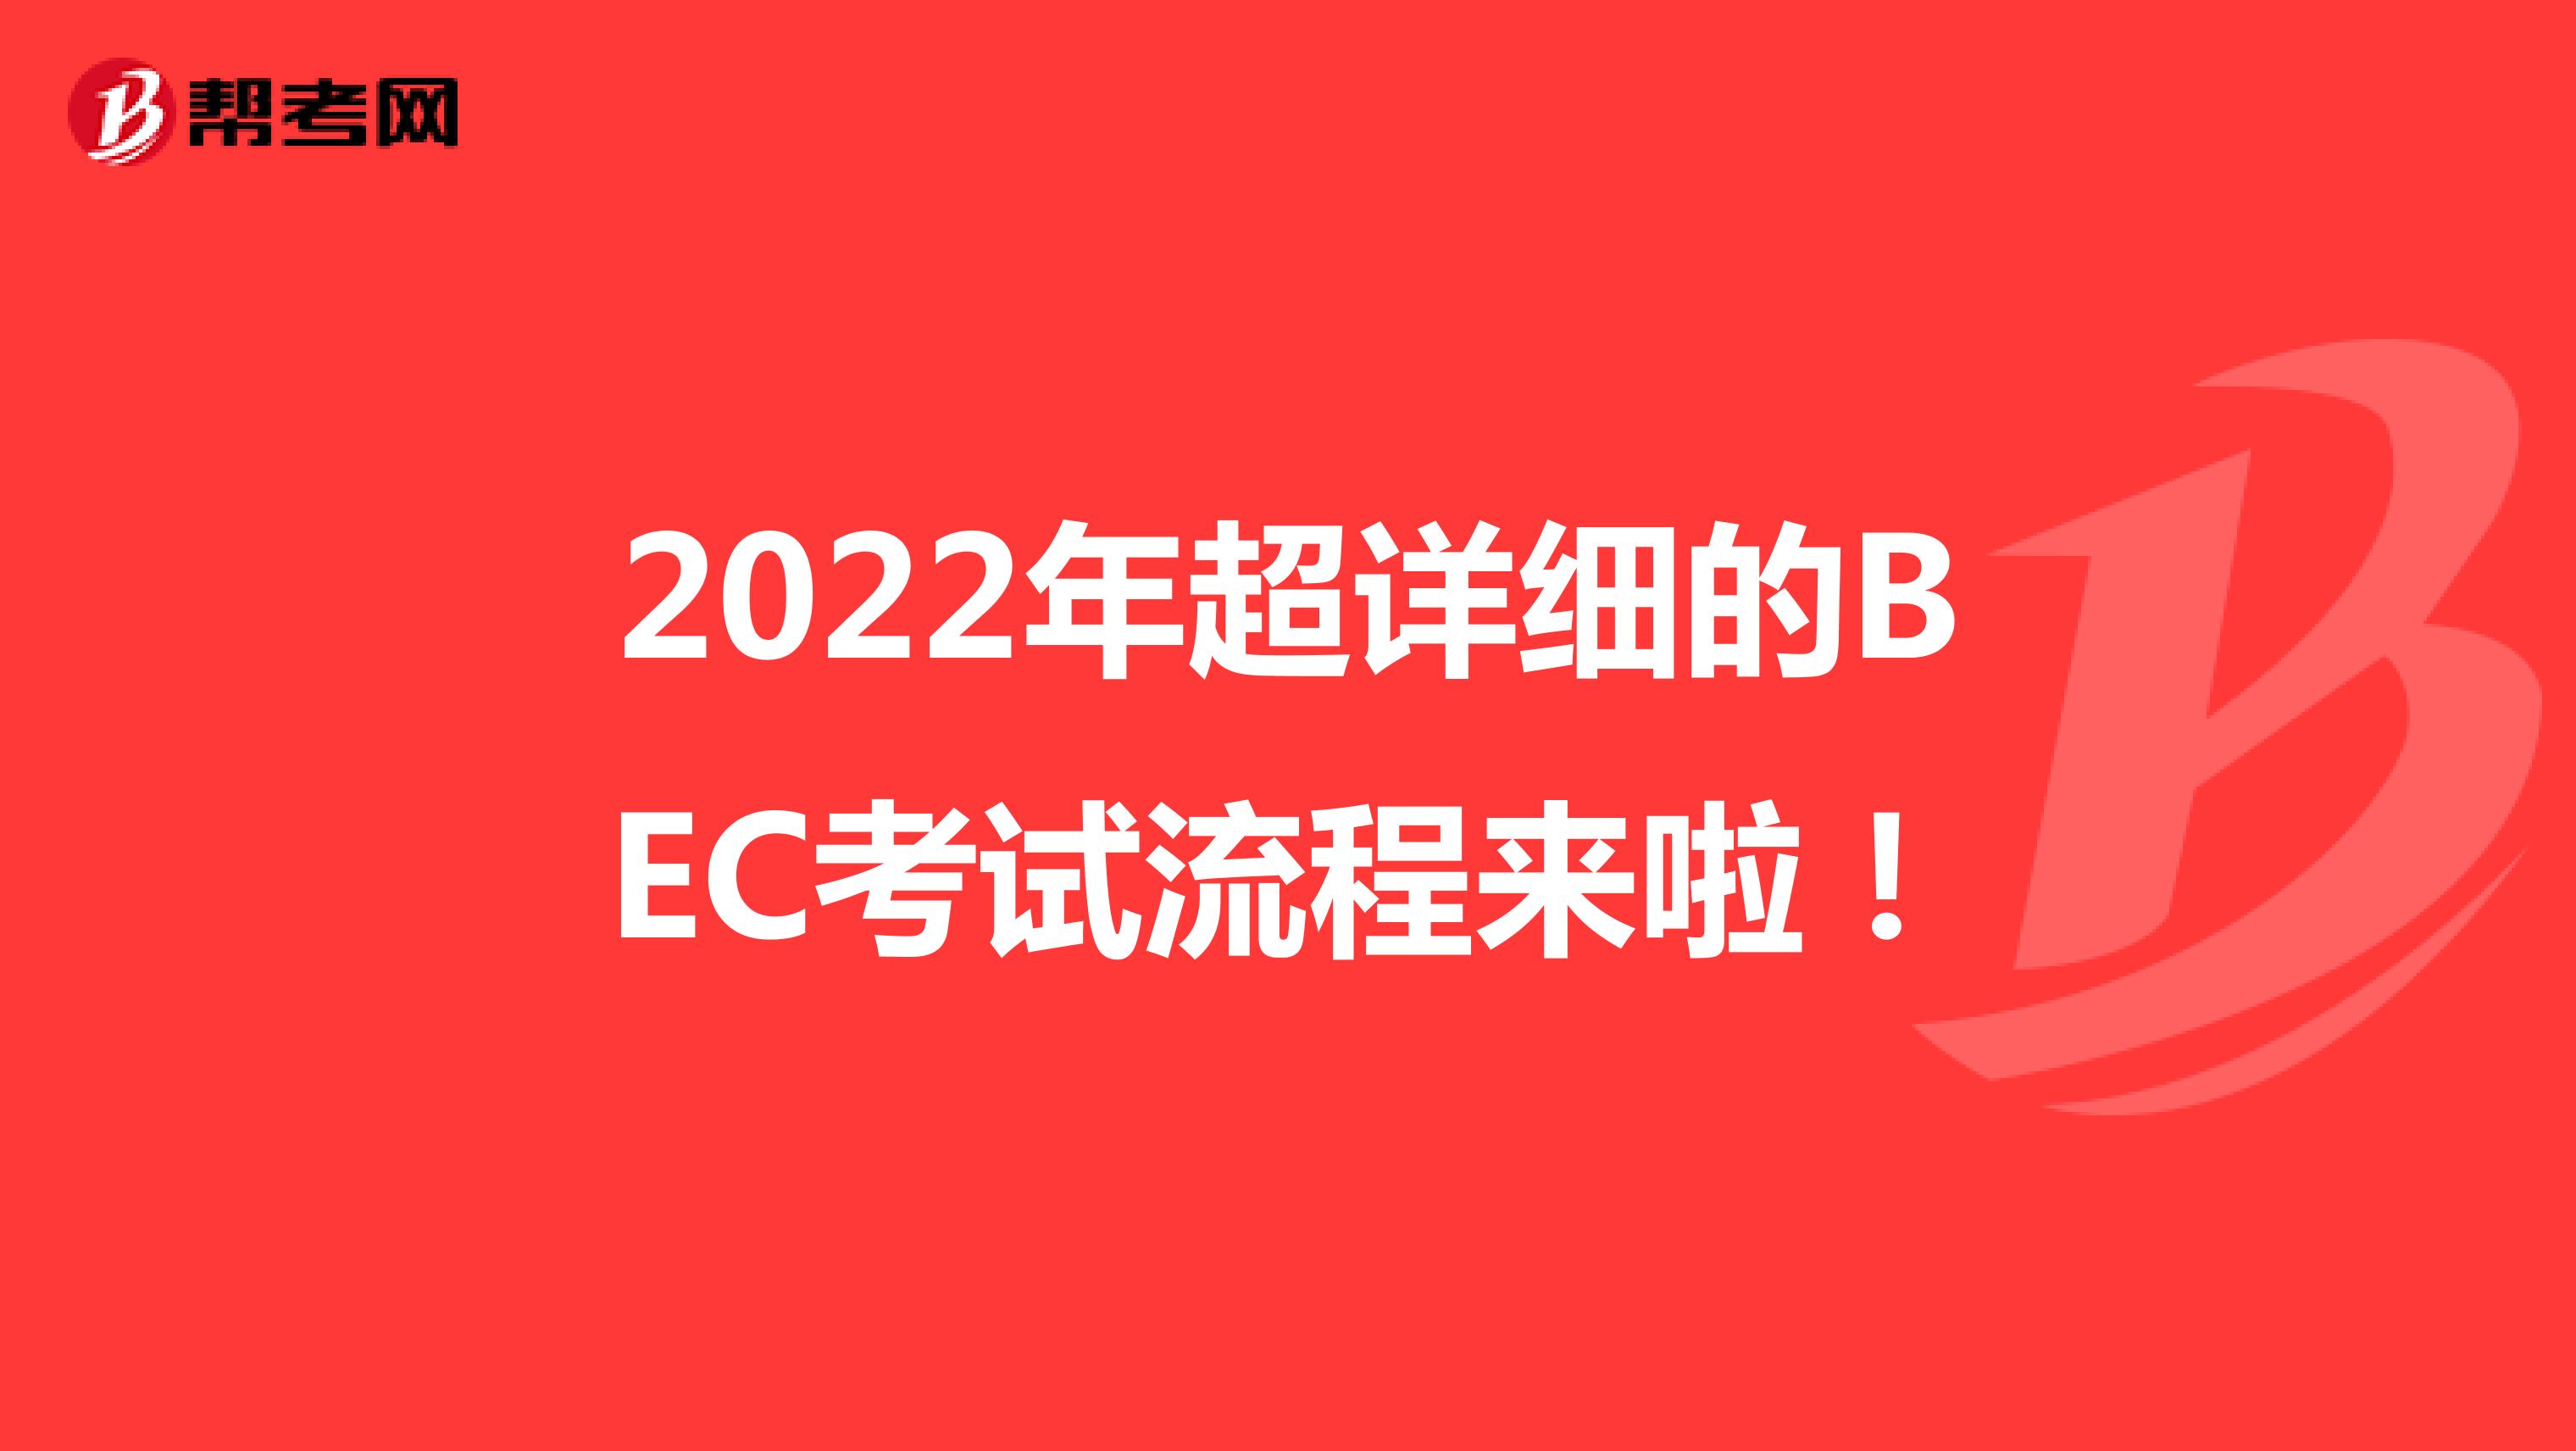 2022年超详细的BEC考试流程来啦！